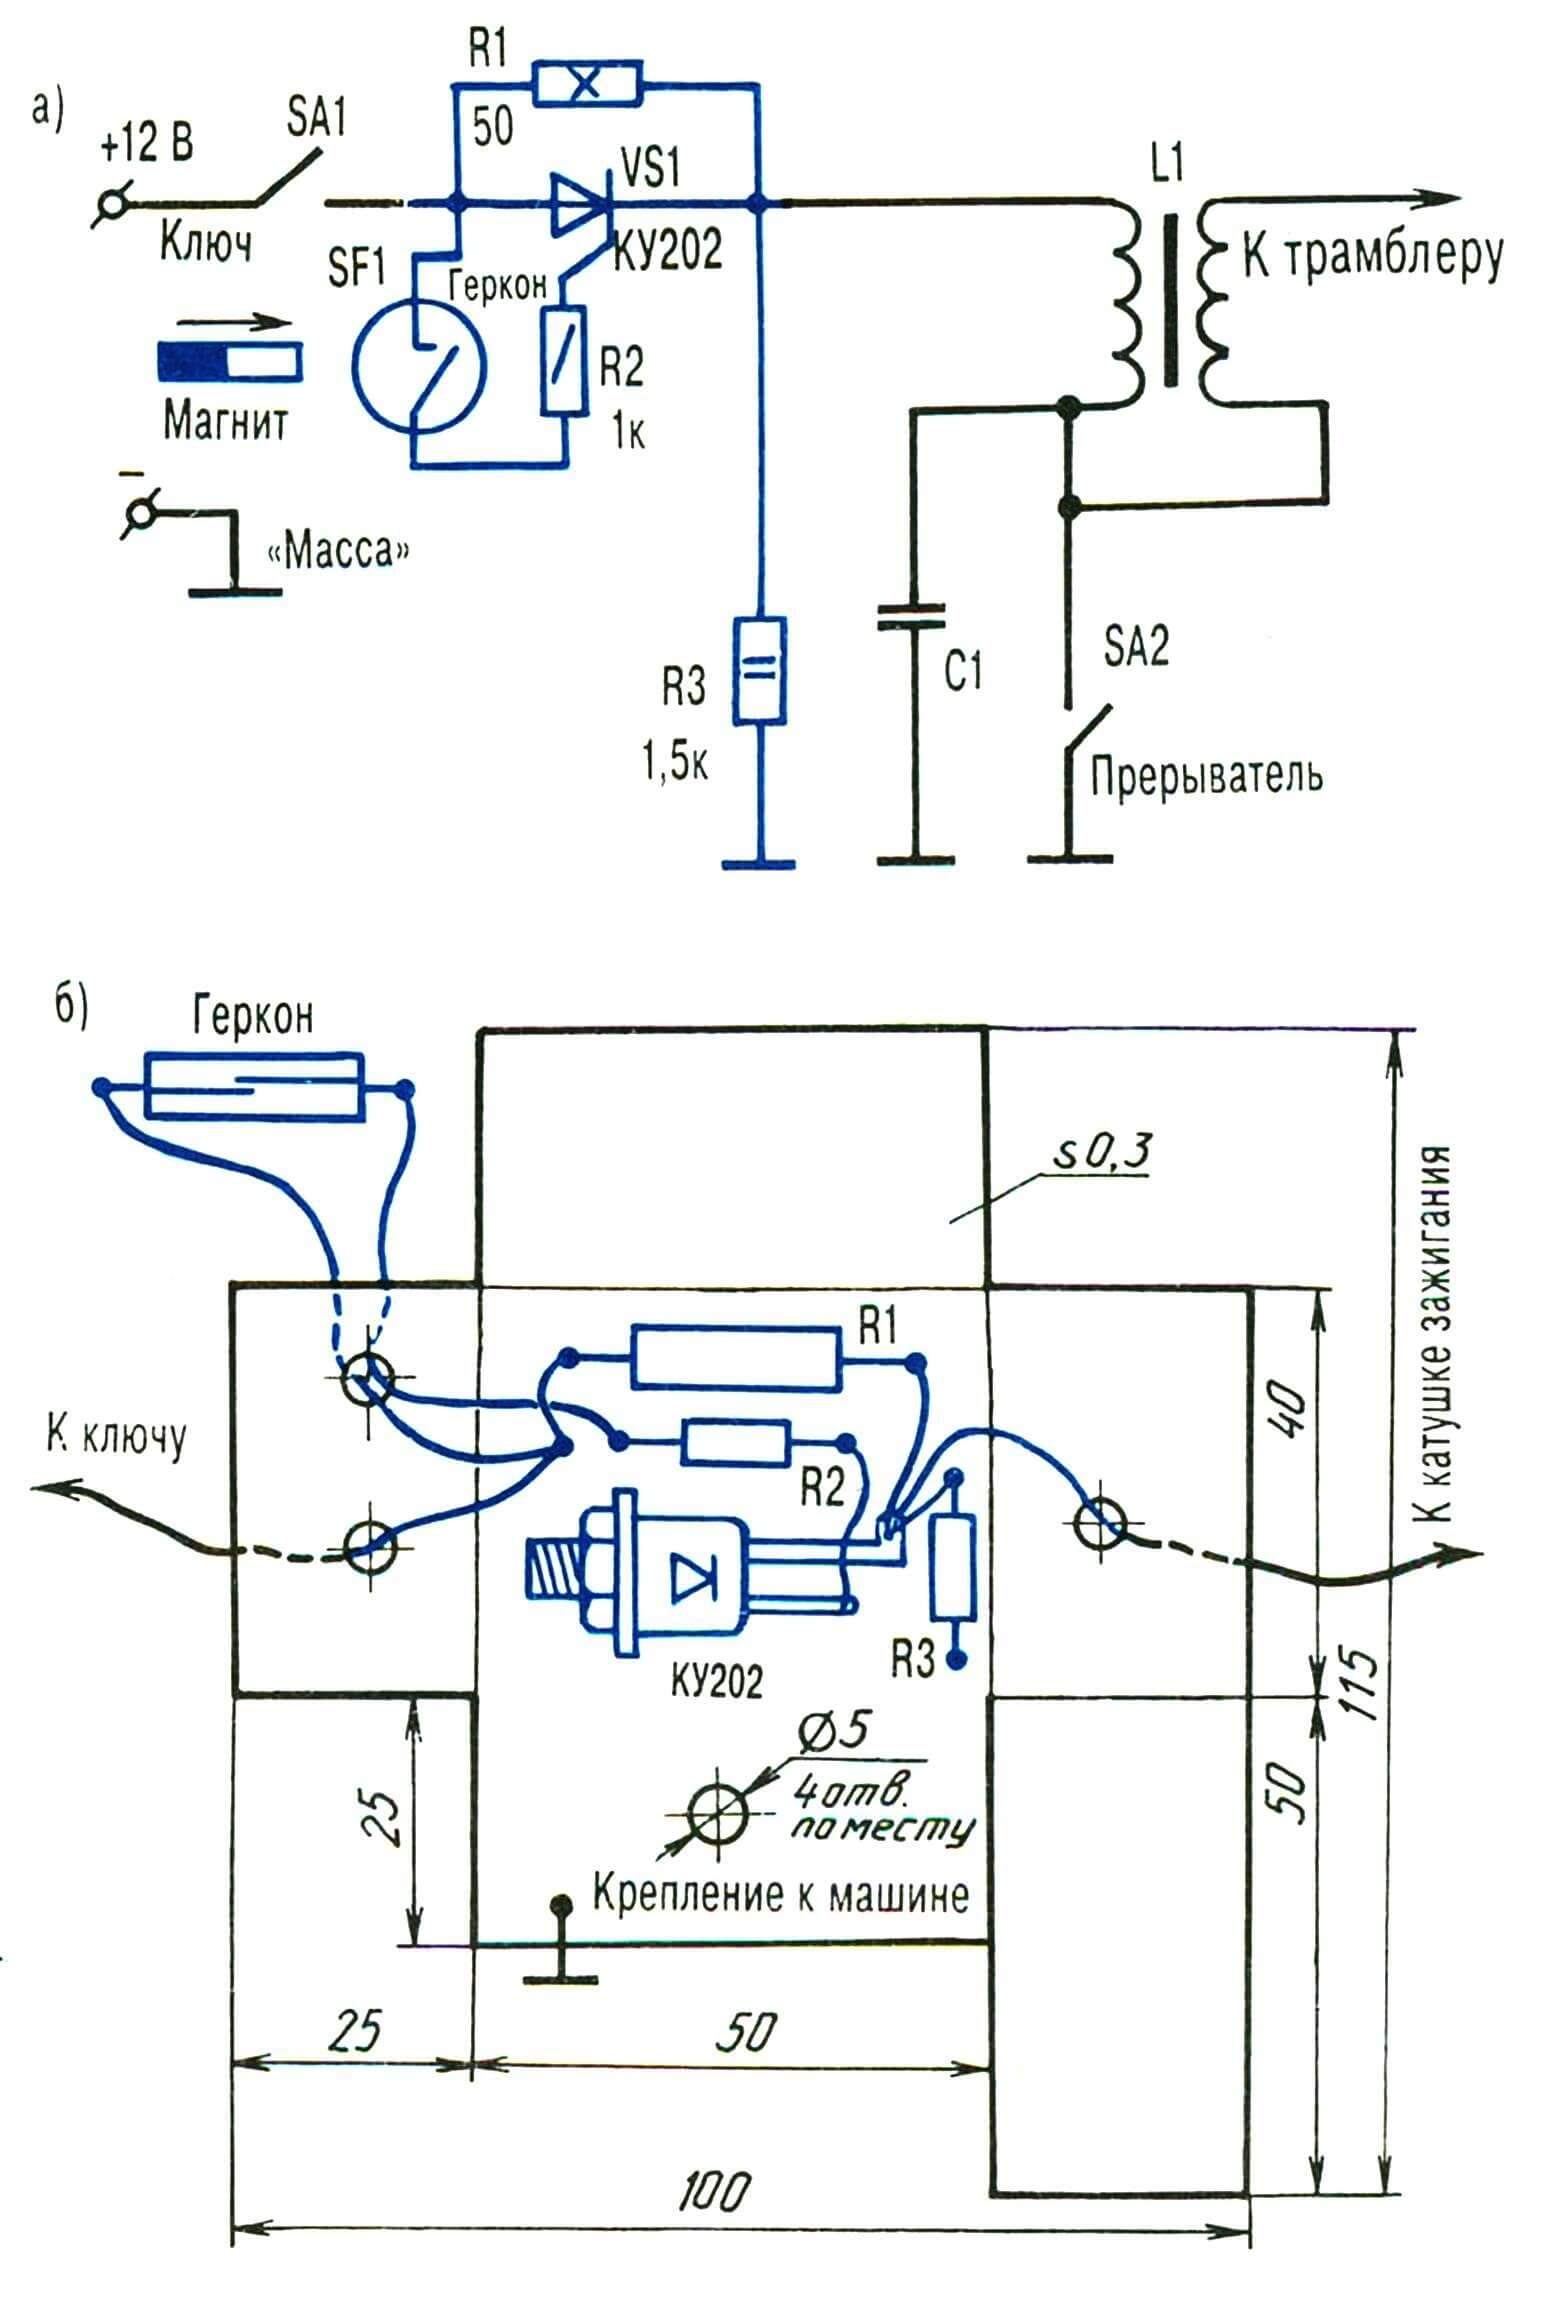 Принципиальная электрическая схема (а) и навесной монтаж (б) противоугонного устройства (новшества выделены контрастным цветом).